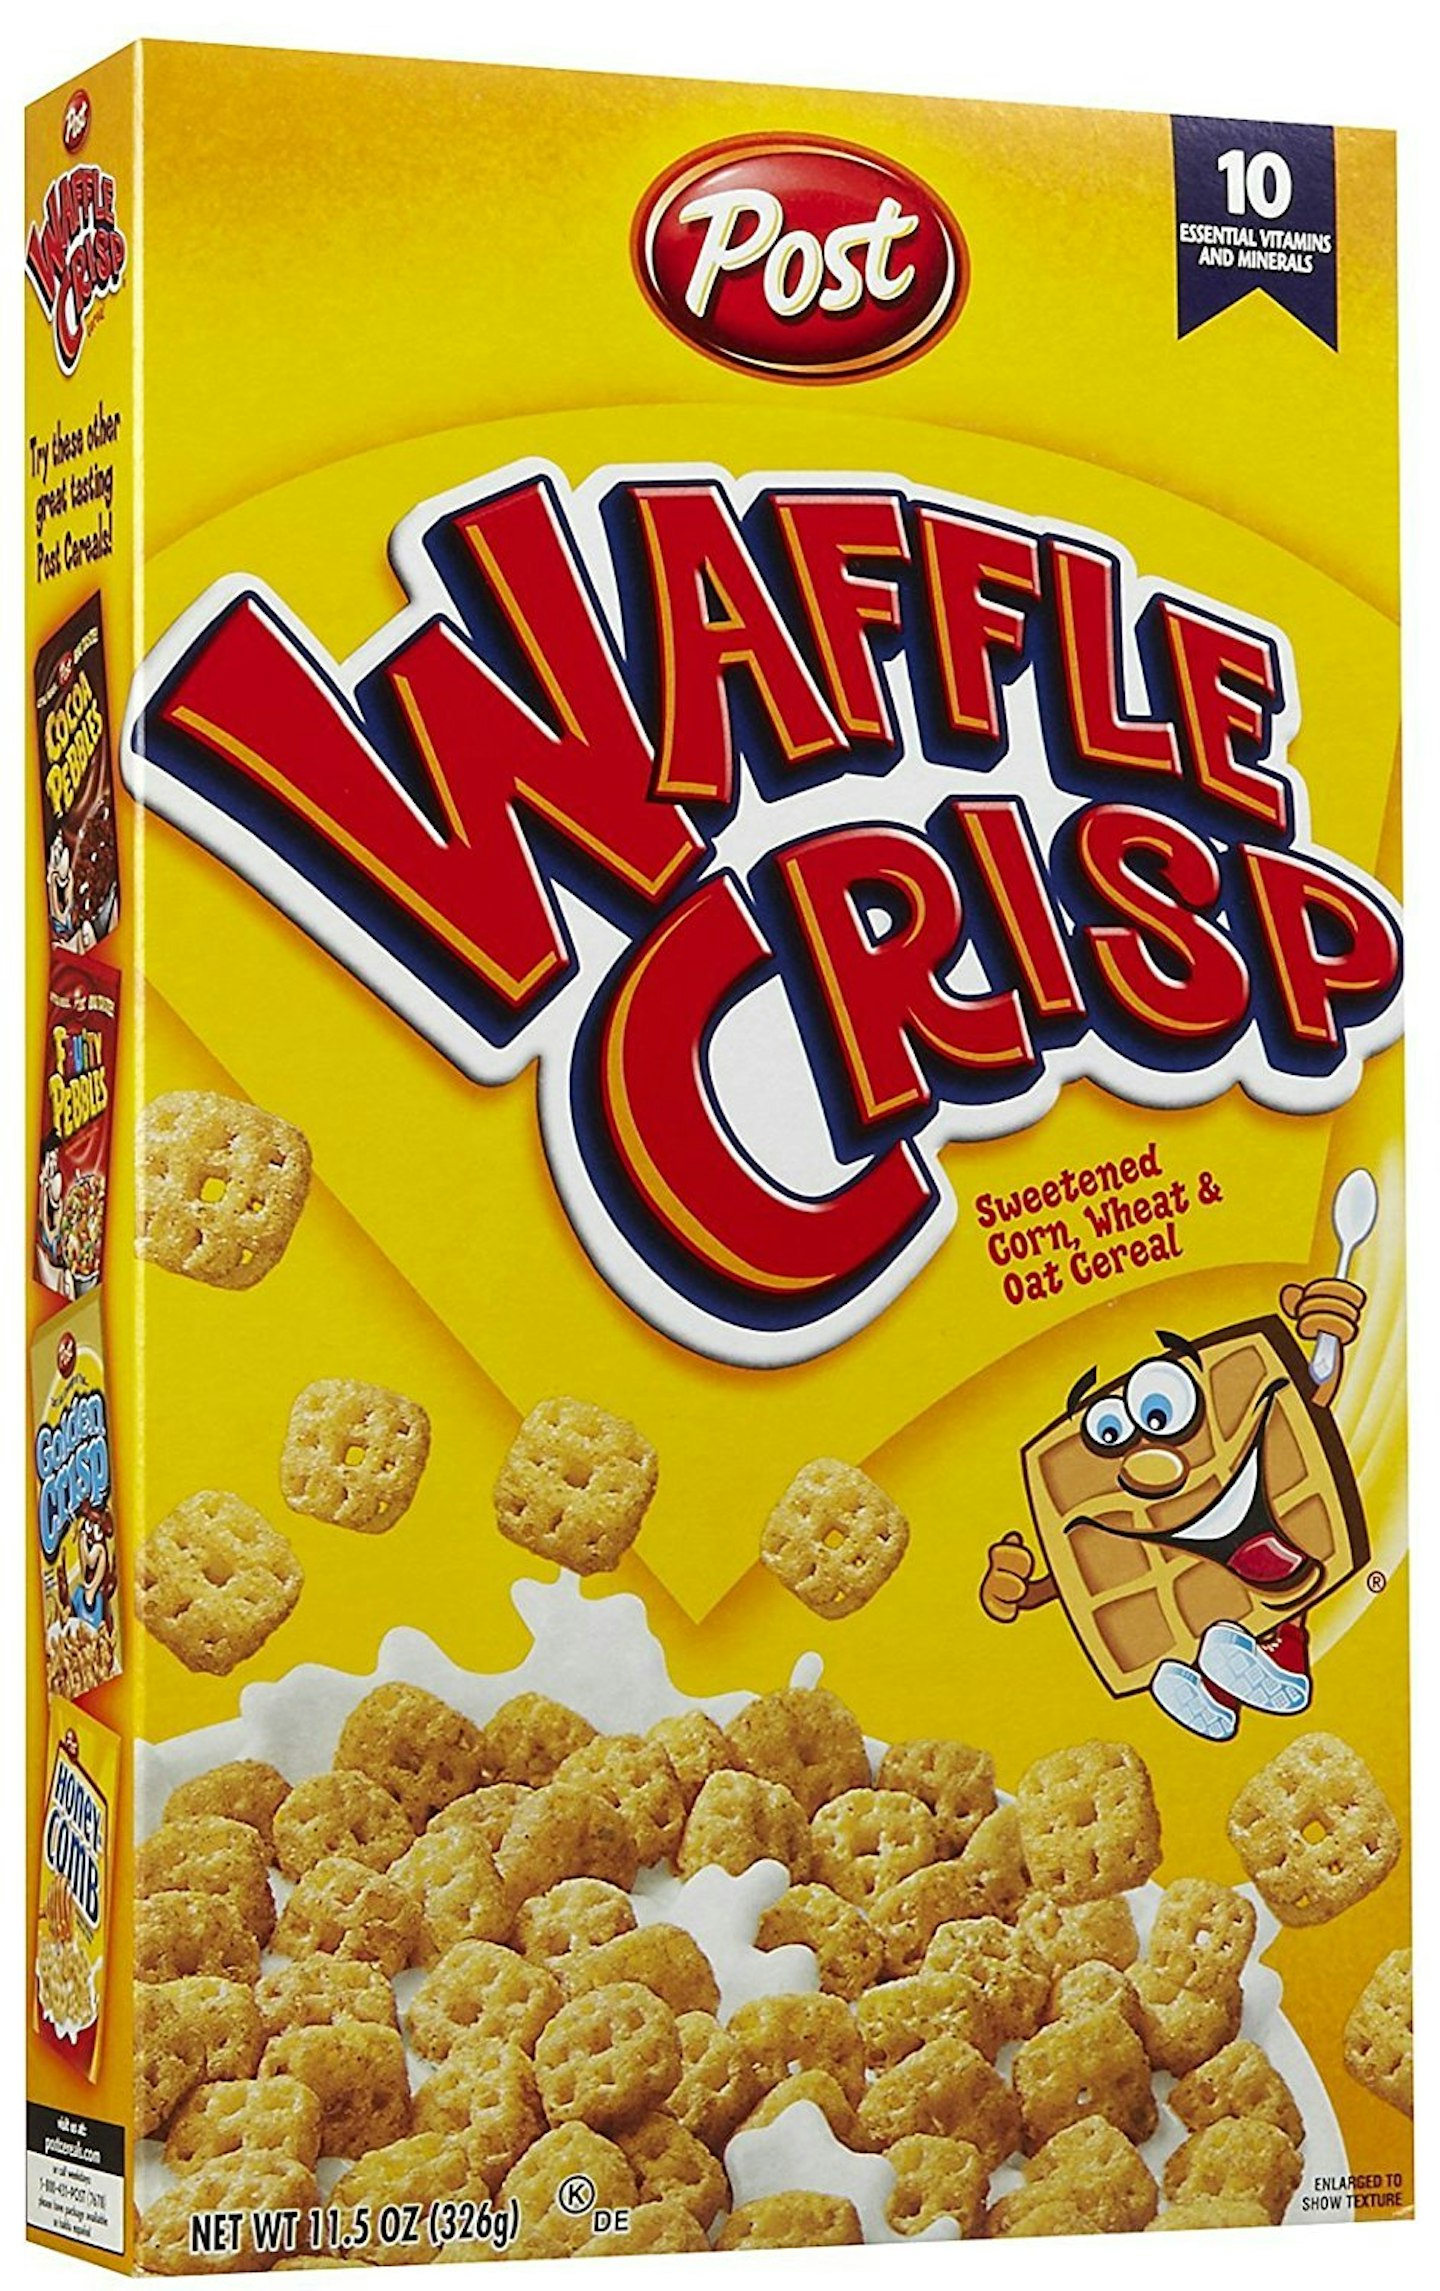 Discontinued cereals Waffle Crisp